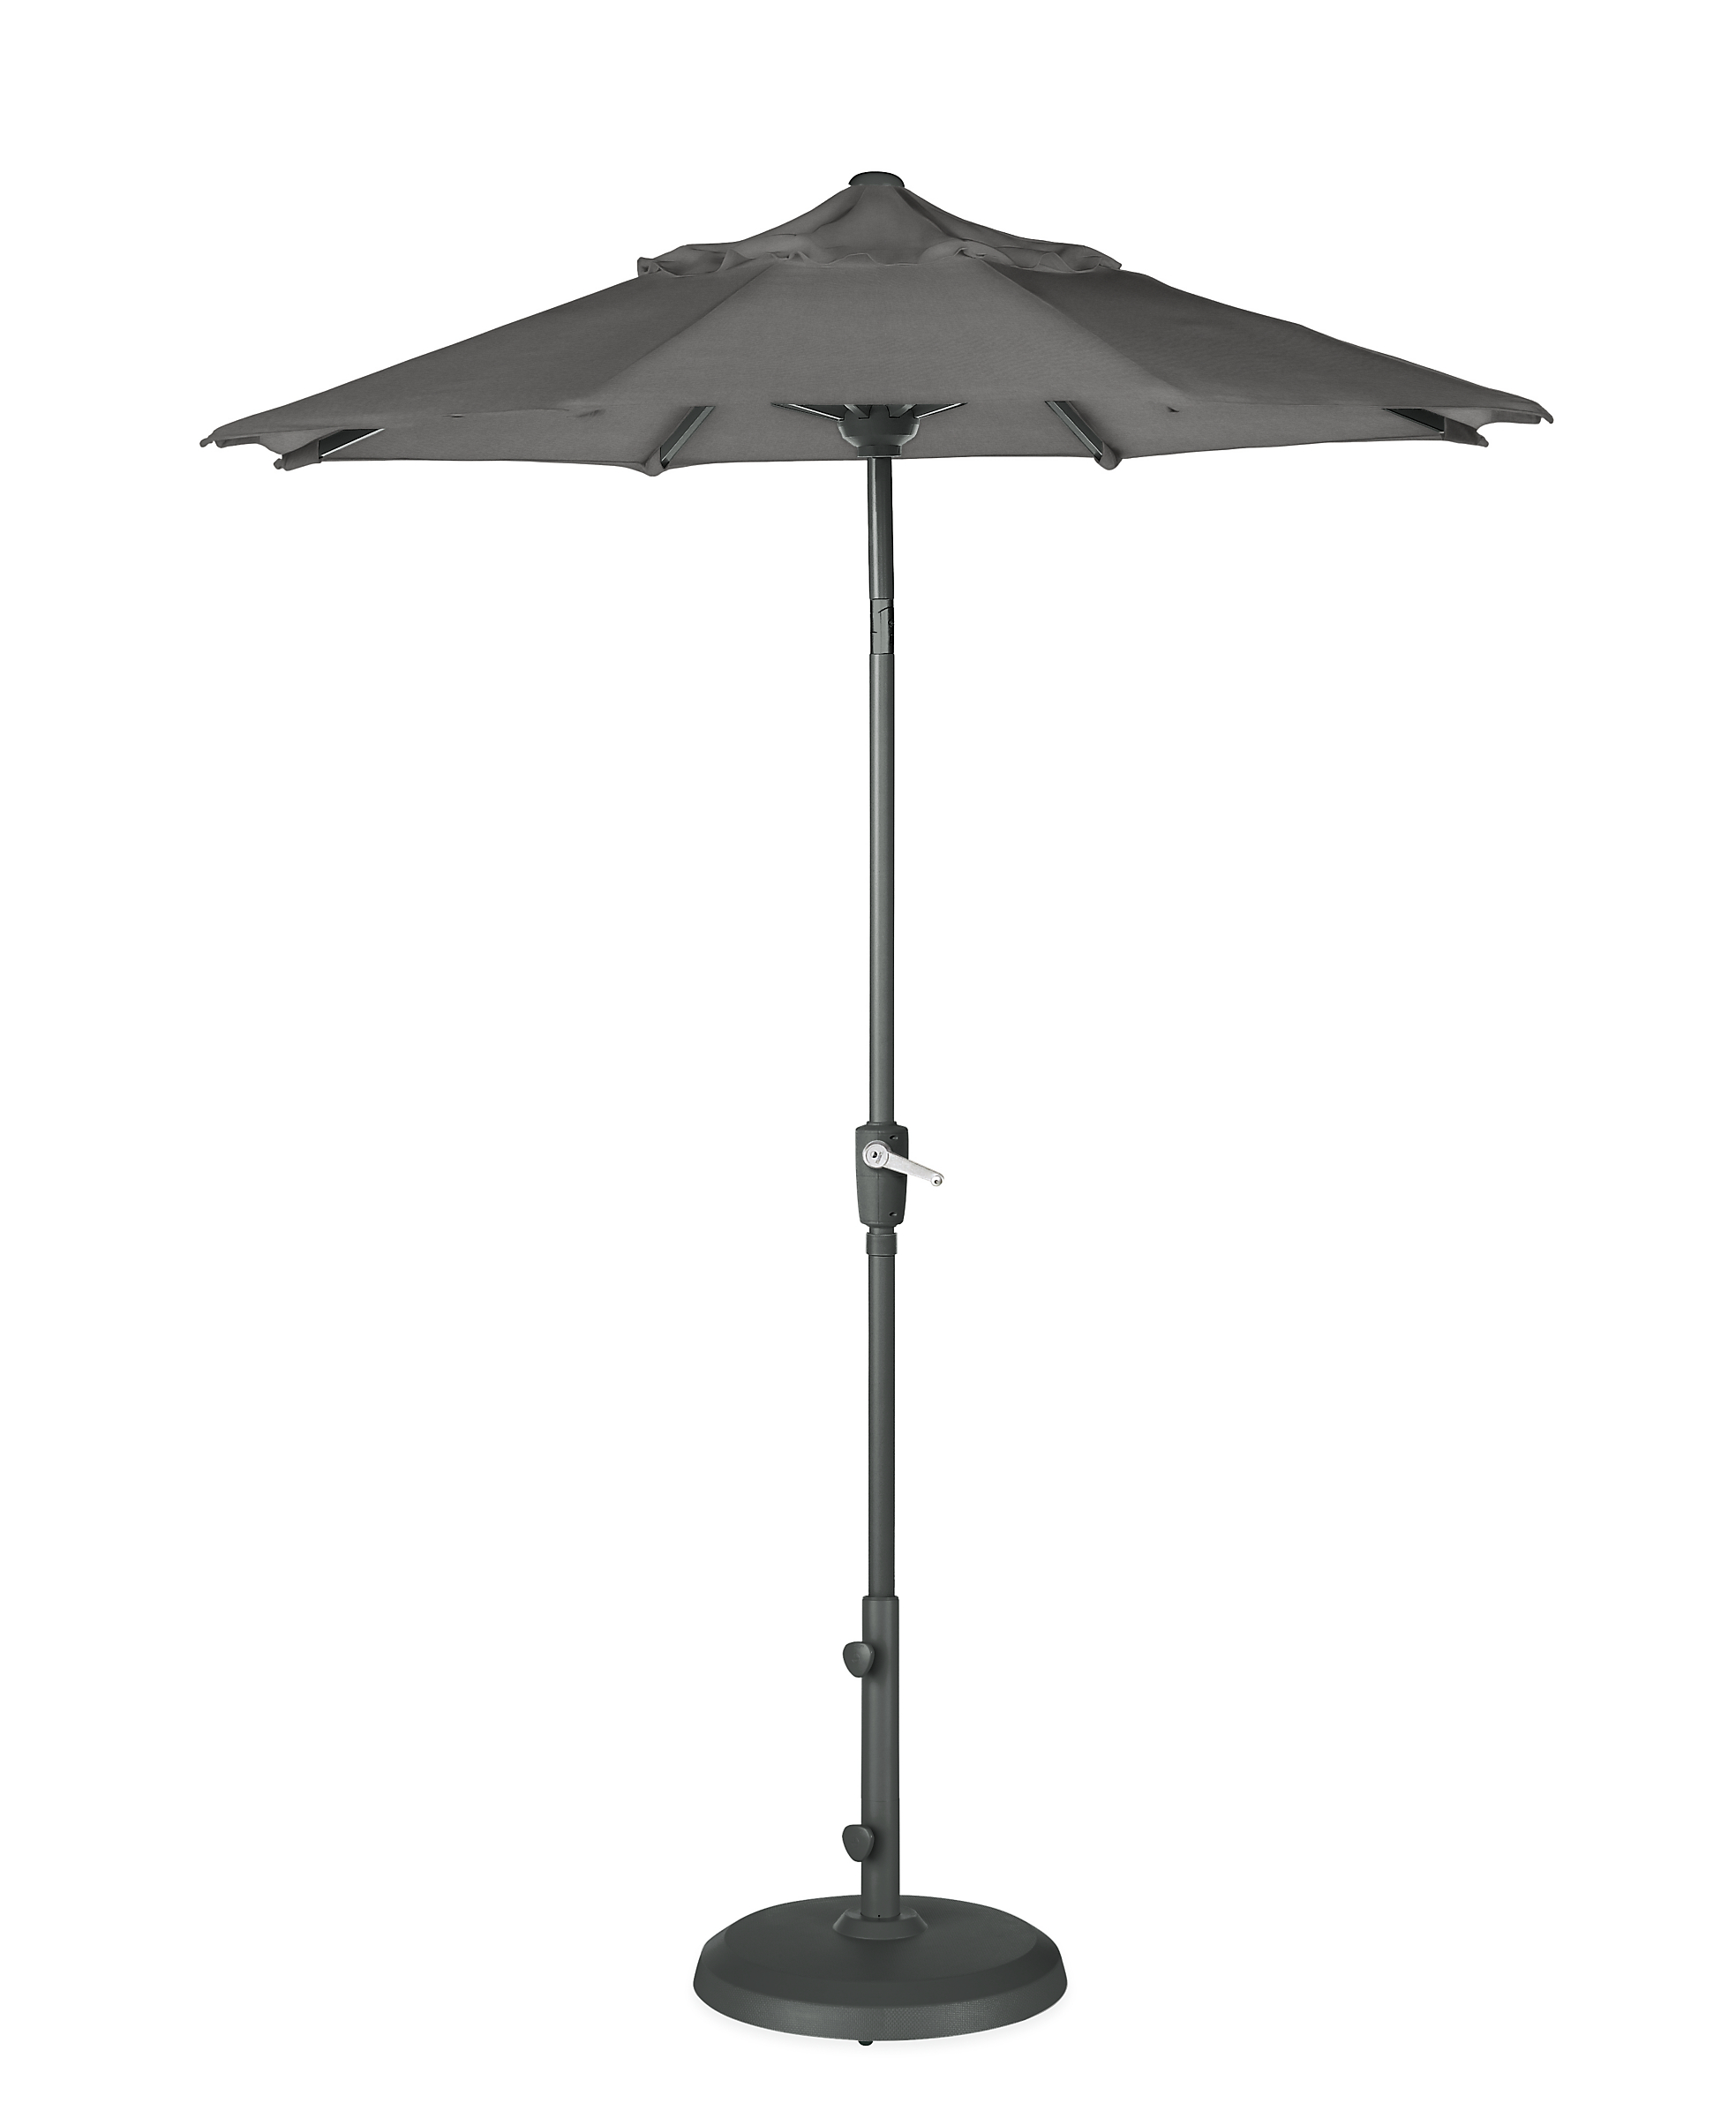 Maui 7.5' Round Patio Umbrella in Sunbrella Canvas Slate with Graphite Base